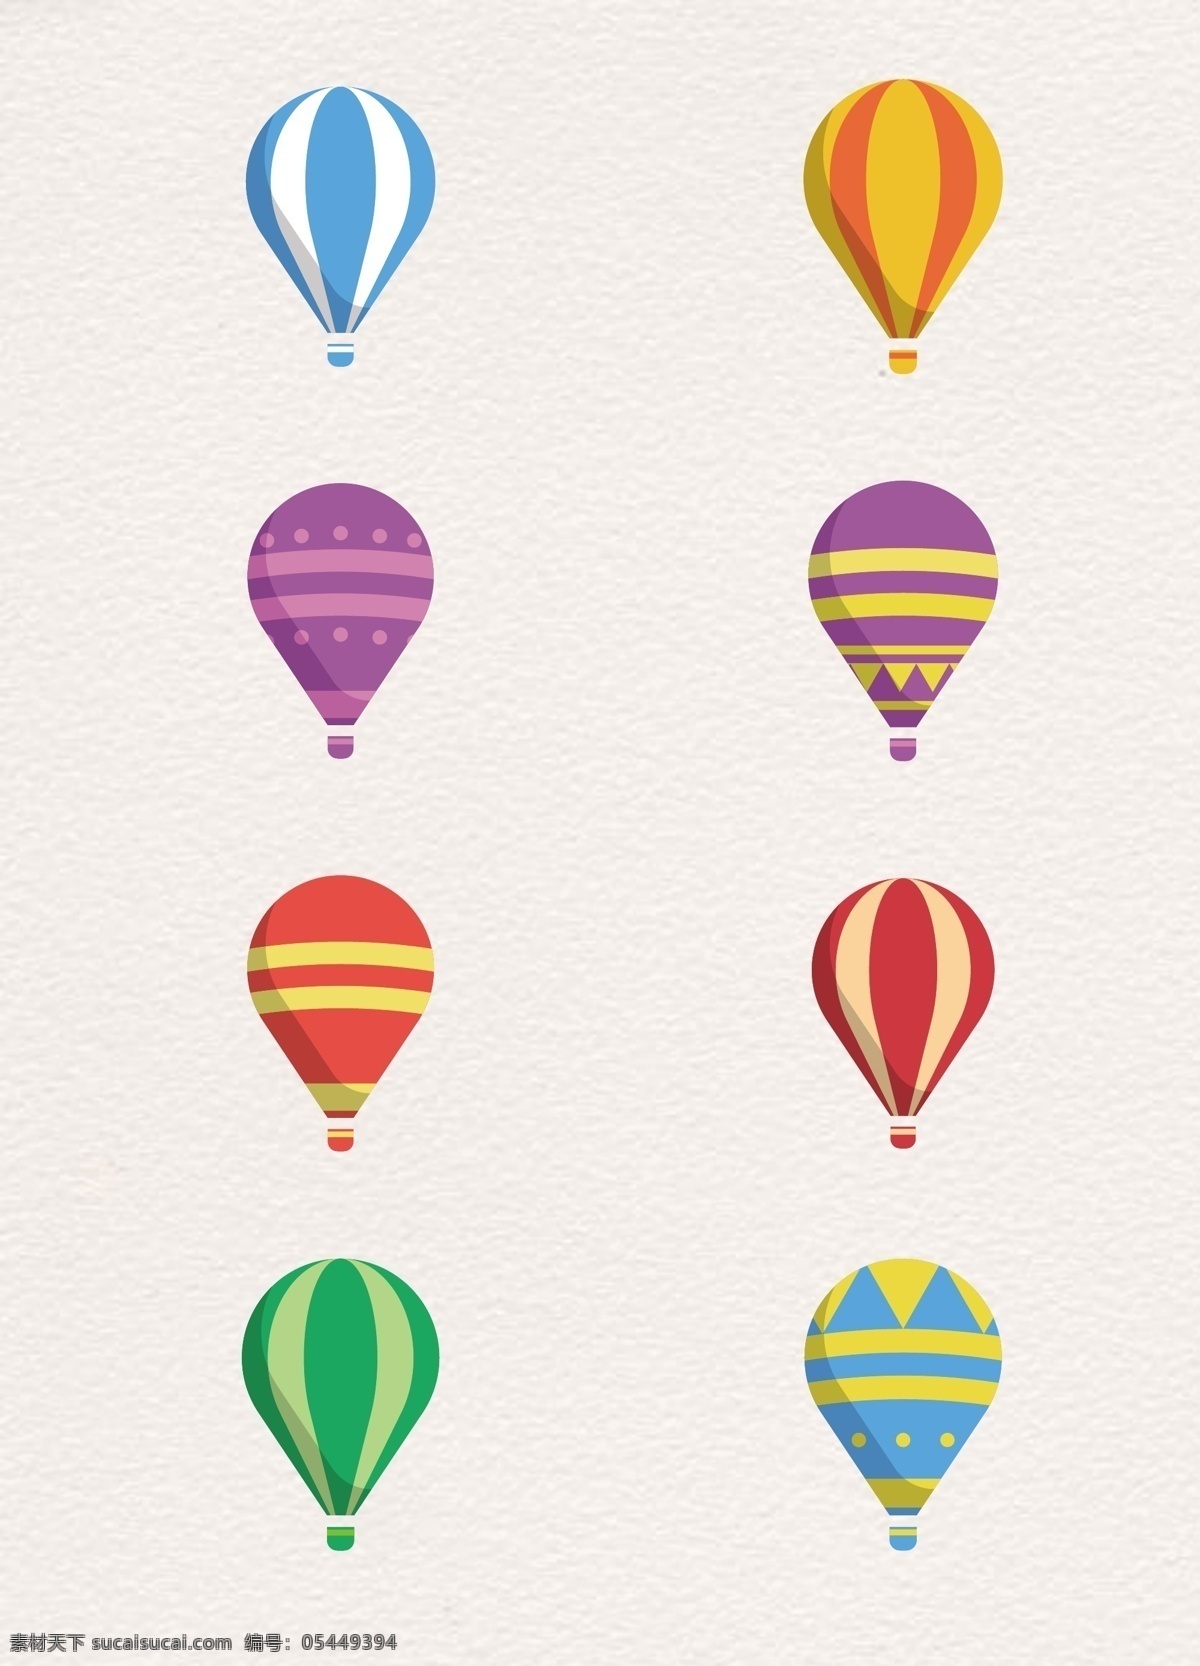 彩色 花纹 旅行 暖色系列 矢量图 条格状 装饰图 卡通 插图 创意卡通 飞行 卡通气球 浅色 热气球矢量 形状 圆弧 运动 生活百科 休闲娱乐